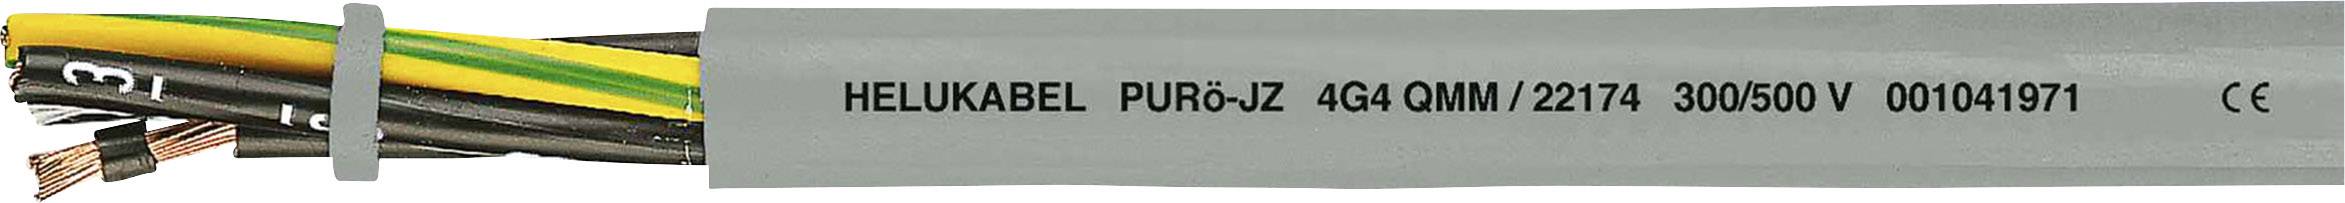 HELUKABEL PURö-JZ Steuerleitung 3 G 0.75 mm² Grau 22117-1000 1000 m